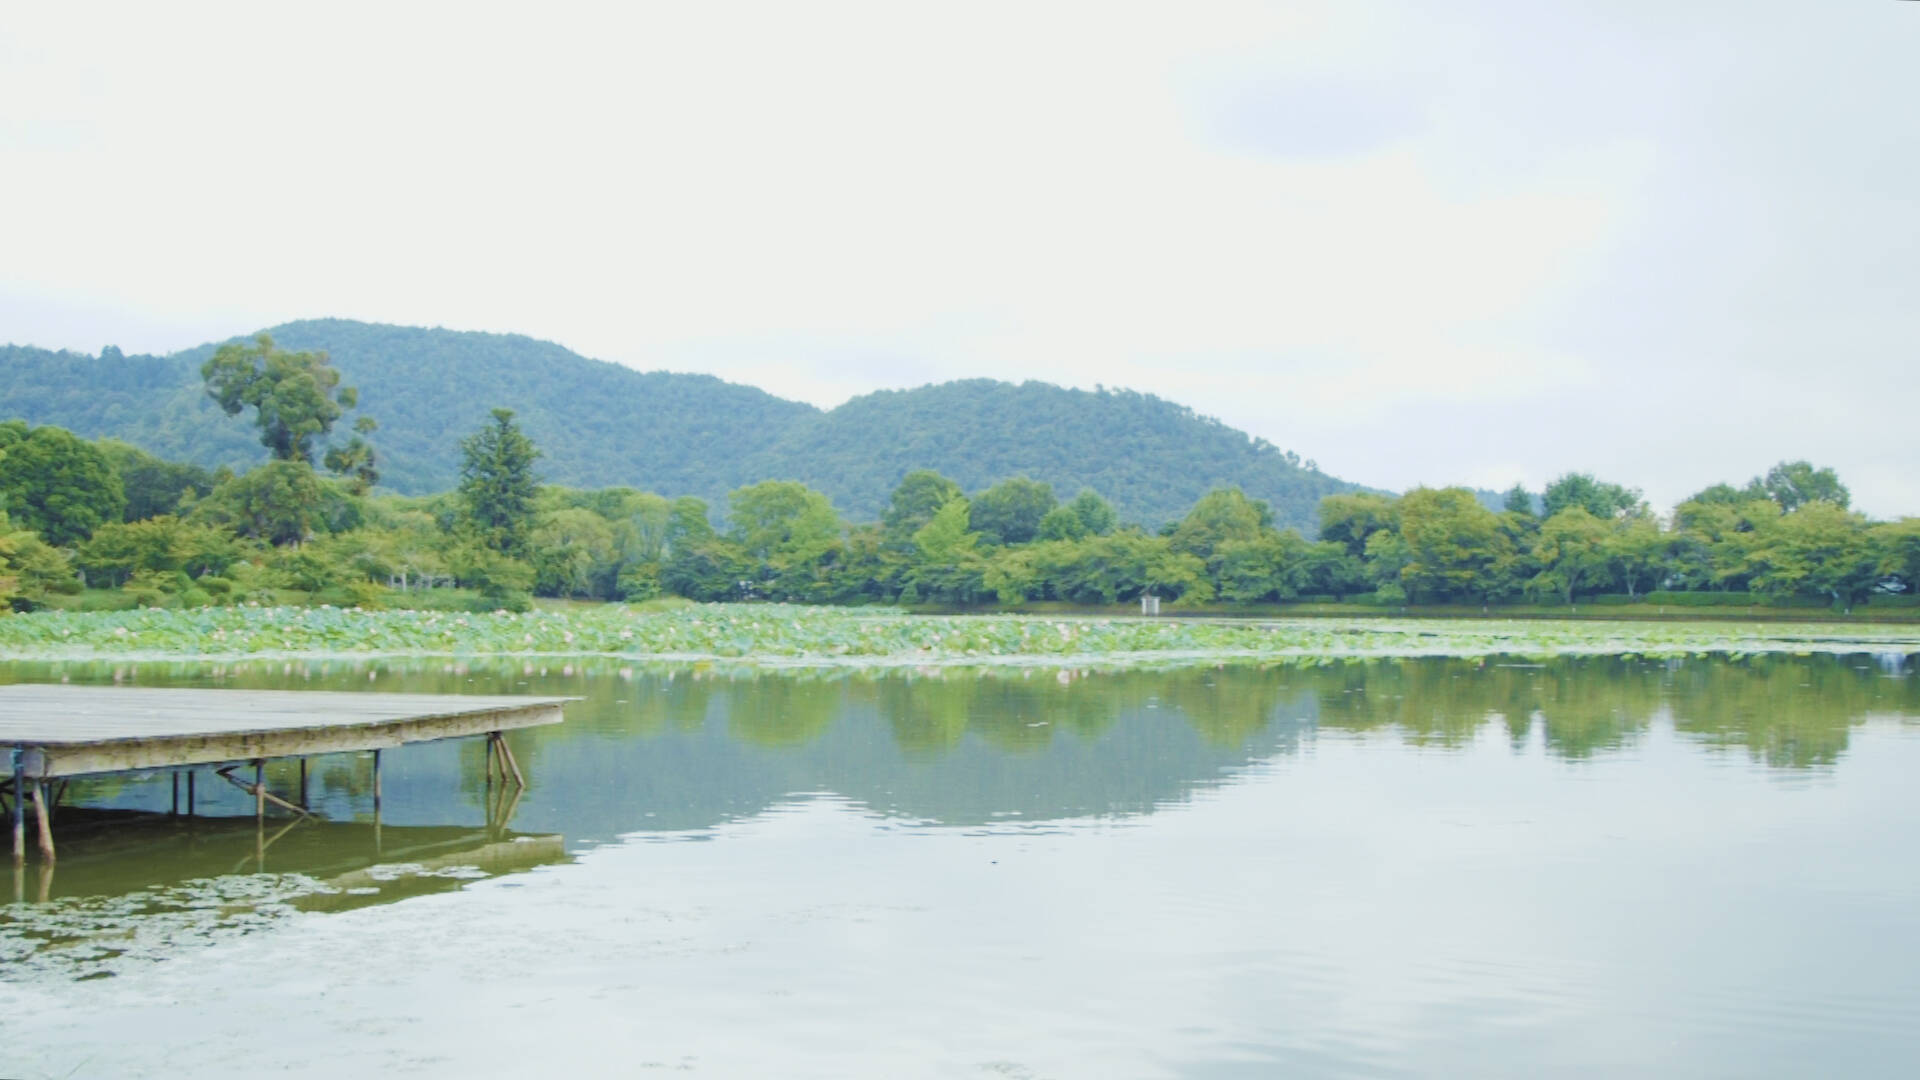 心安らぐ写経体験も。雄大な池に浮かぶ美しい寺院「大覚寺」